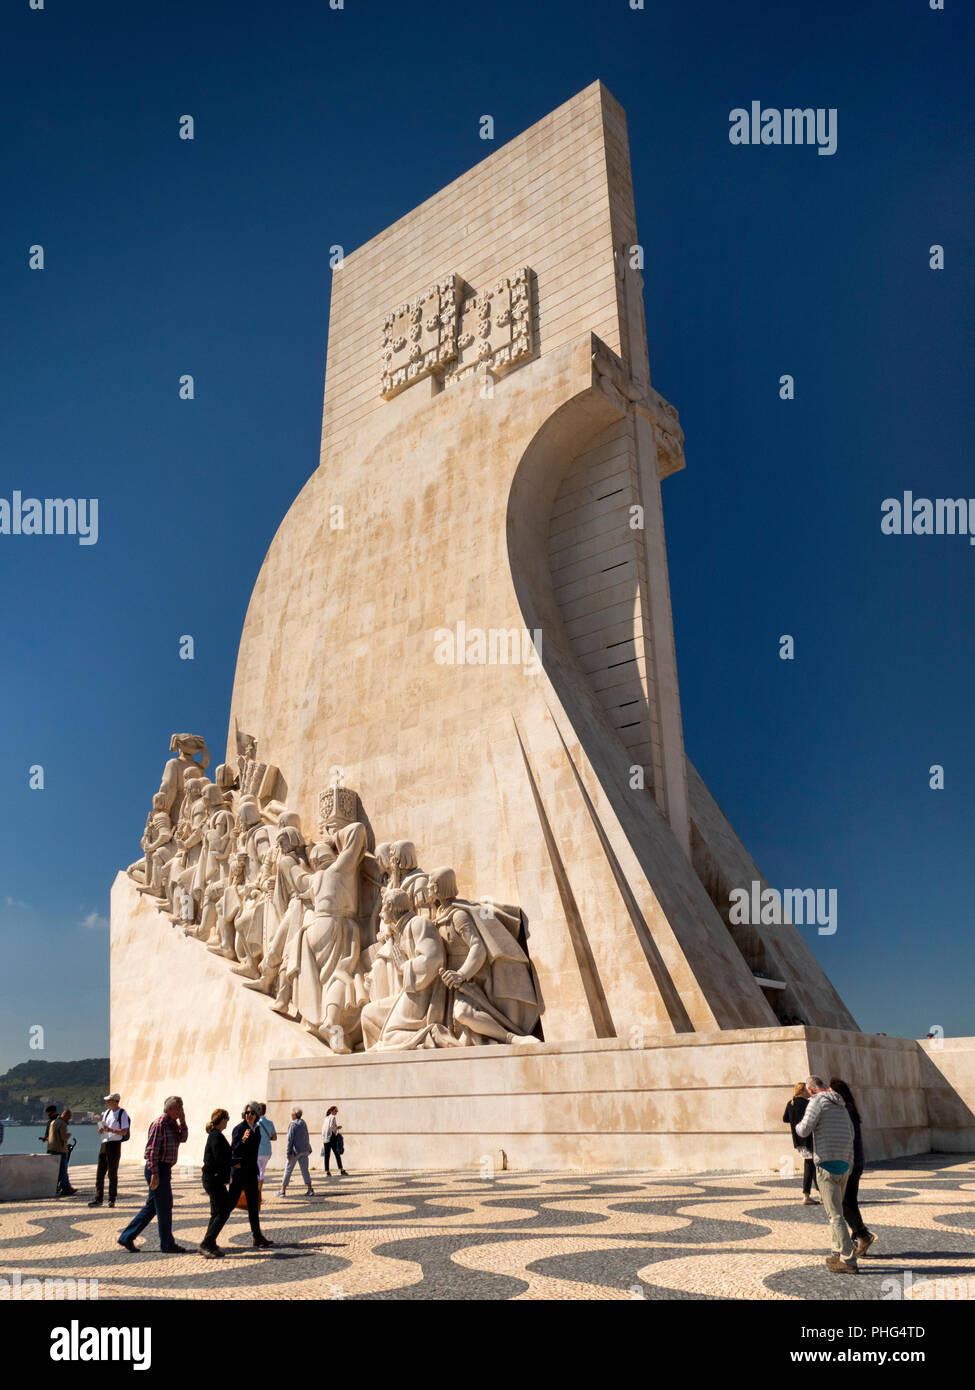 Portugal, Lisbonne, Belém, Padrao dos Deccobrimentos, le monument des Découvertes, d'explorateurs maritimes memorial Banque D'Images